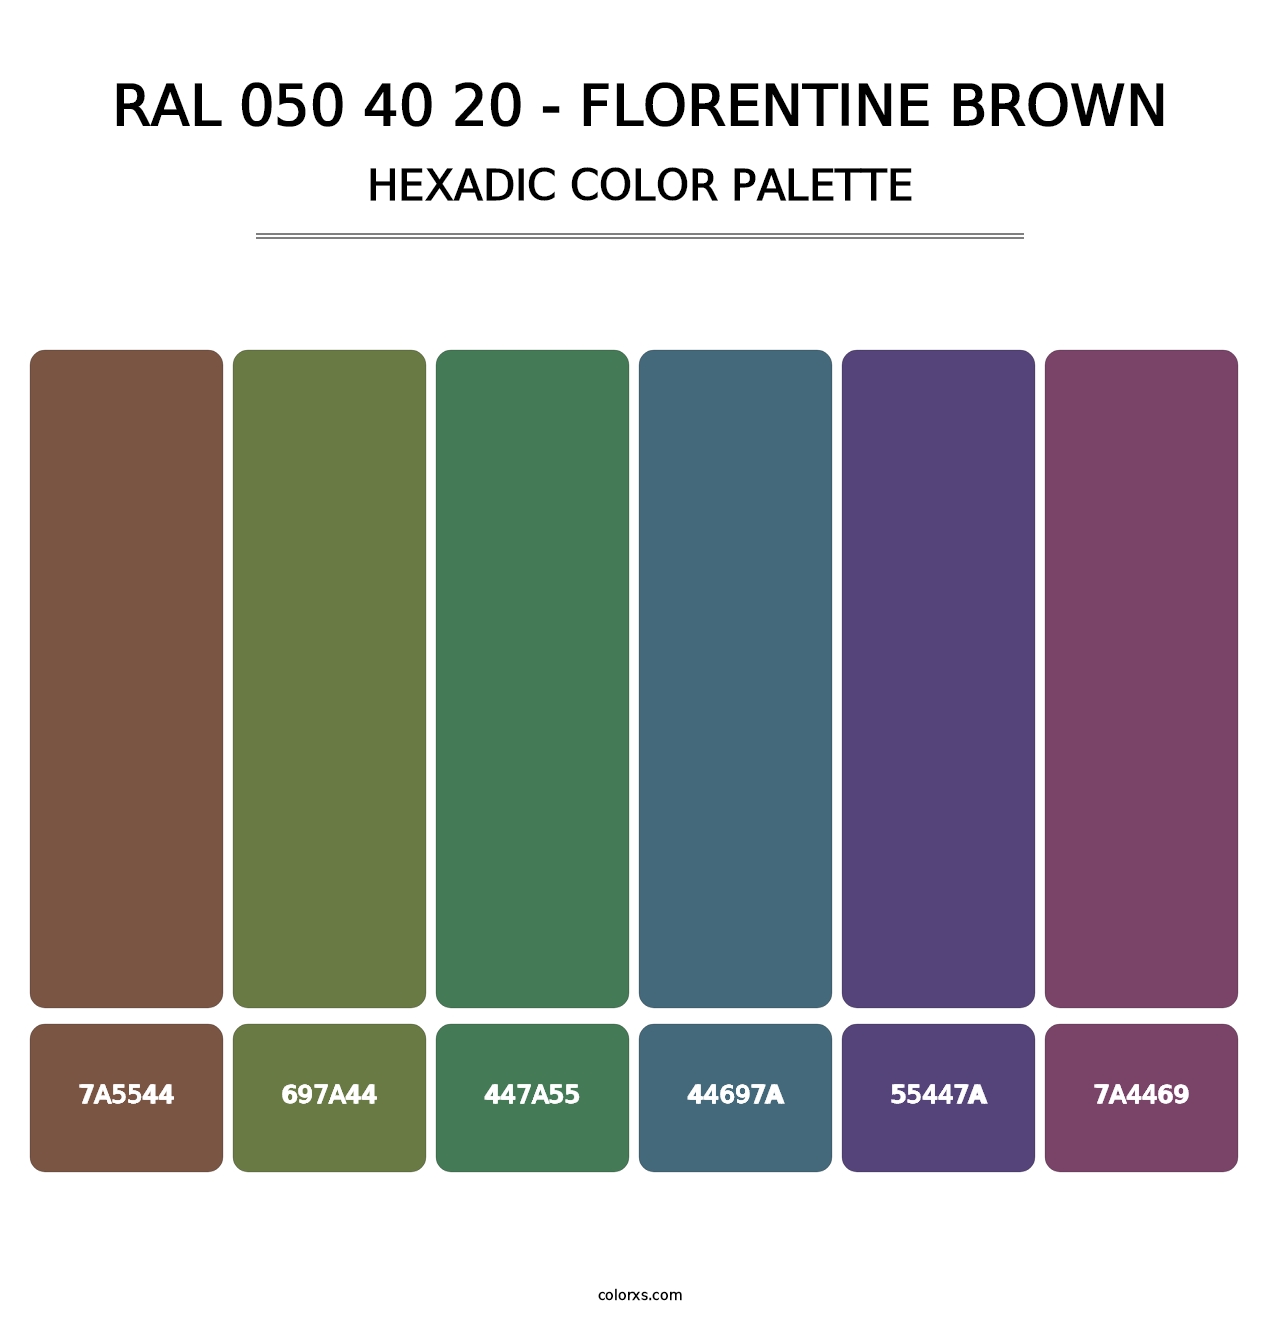 RAL 050 40 20 - Florentine Brown - Hexadic Color Palette